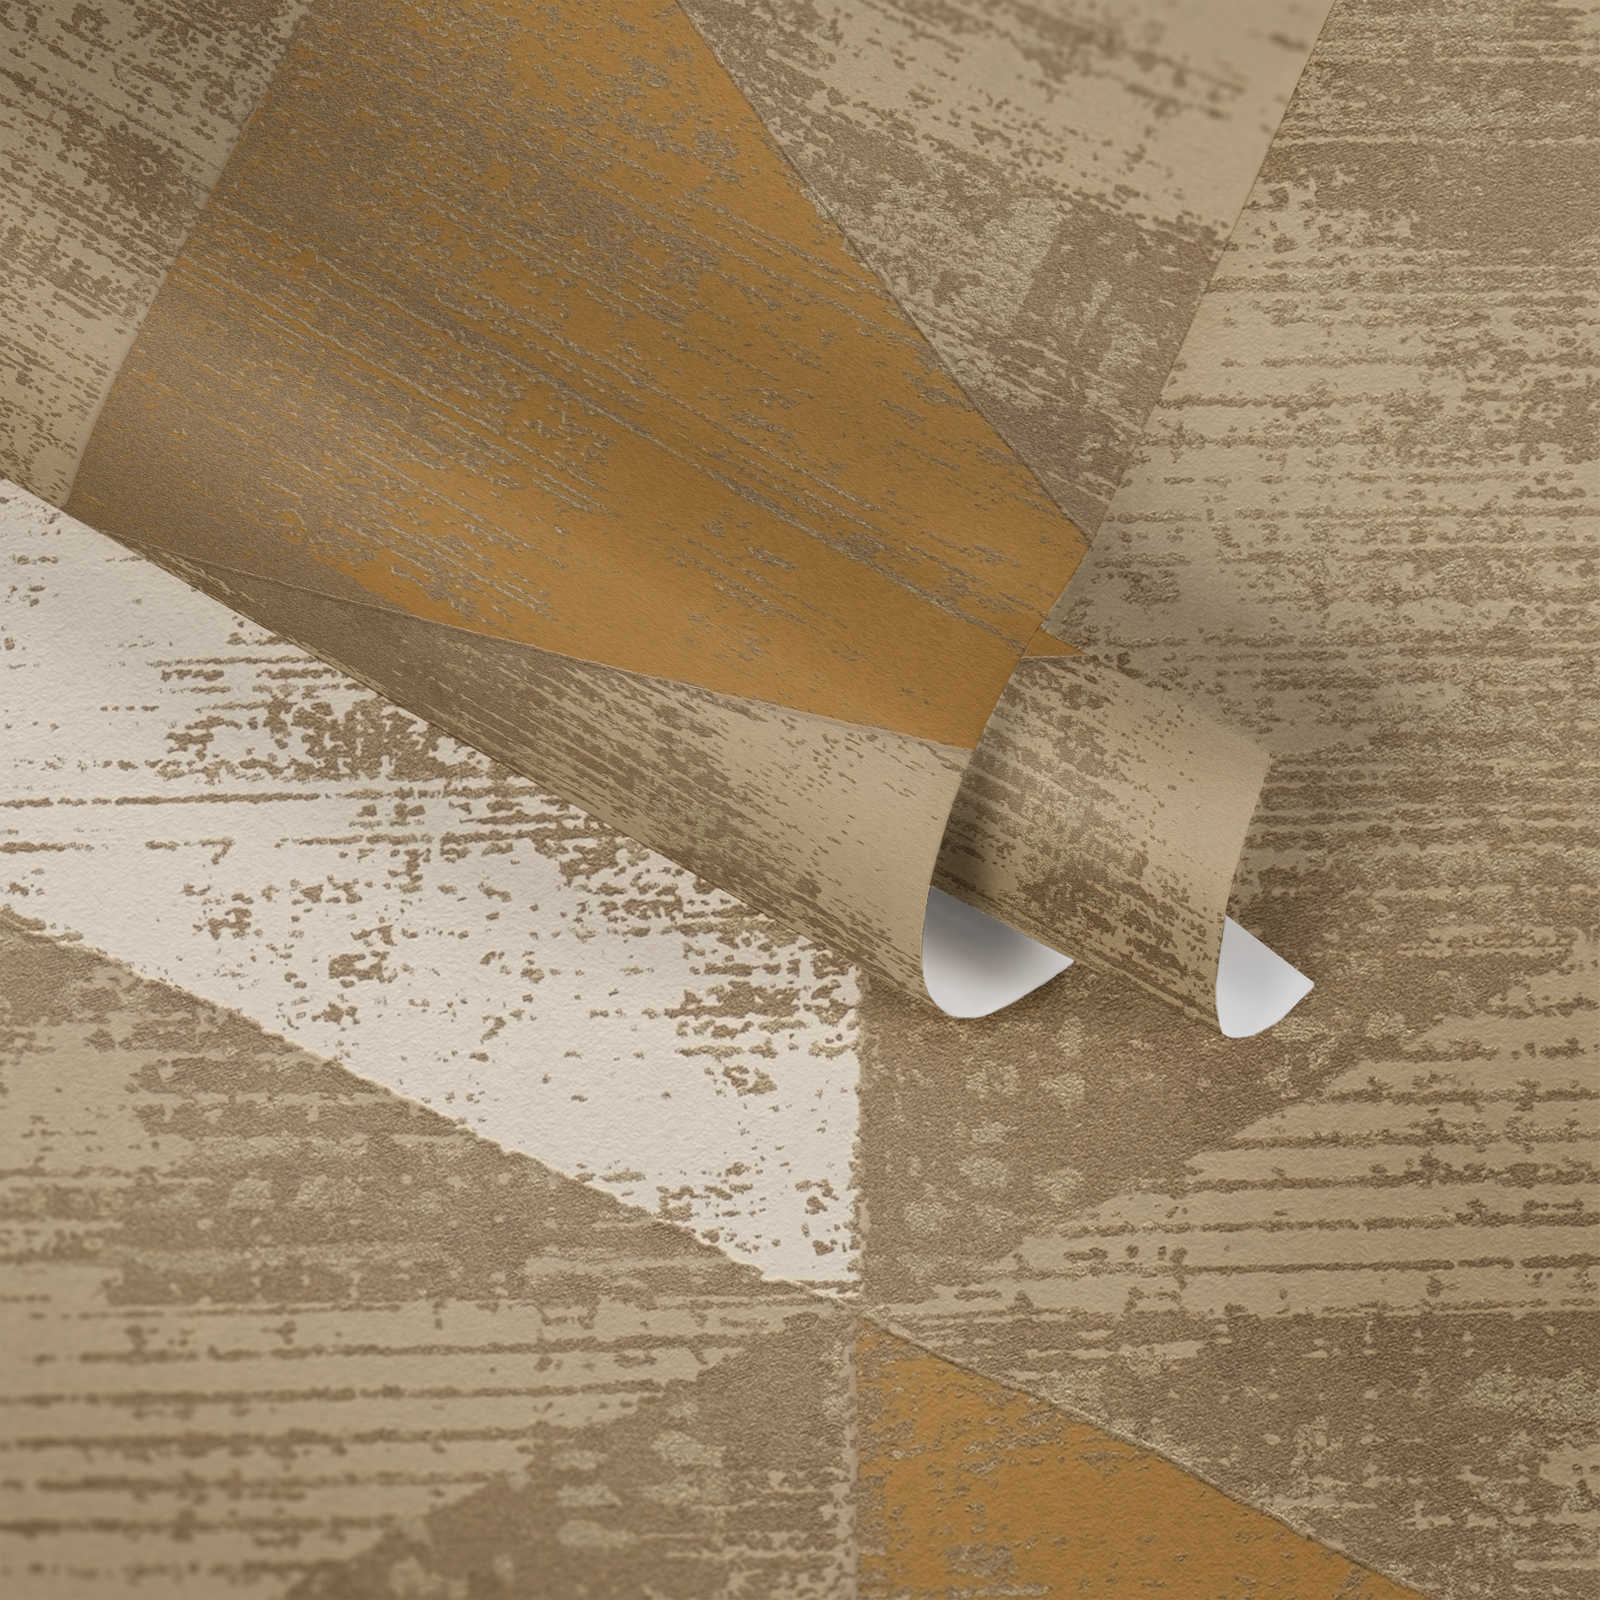             Papel pintado estilo industrial con aspecto metálico rústico - metálico, beige
        